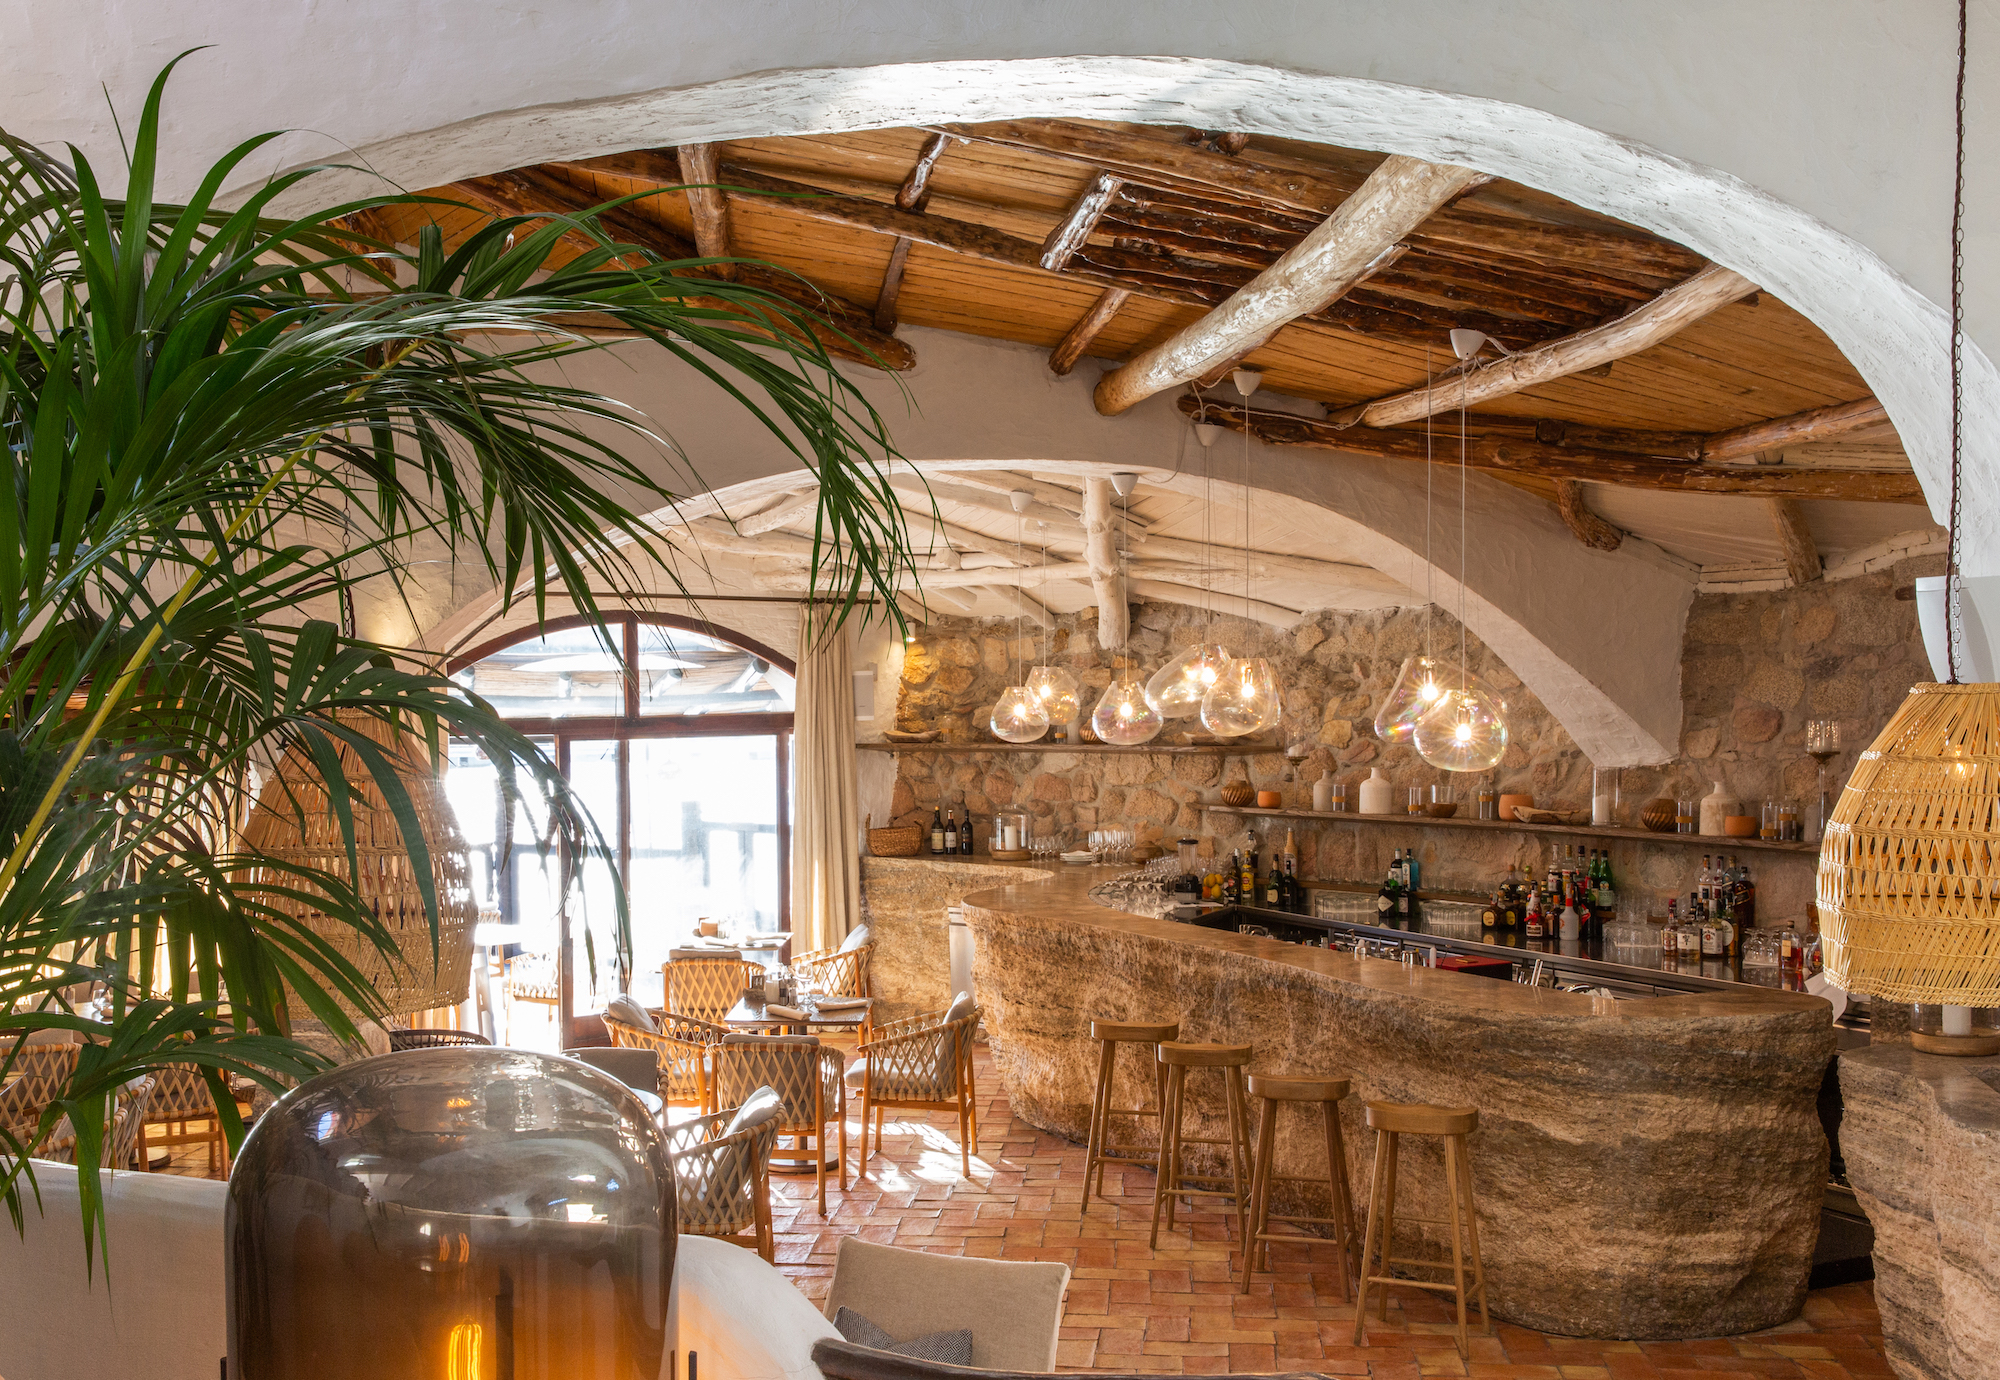 The bar at Quattro Passi al Pescatore, Sardinia